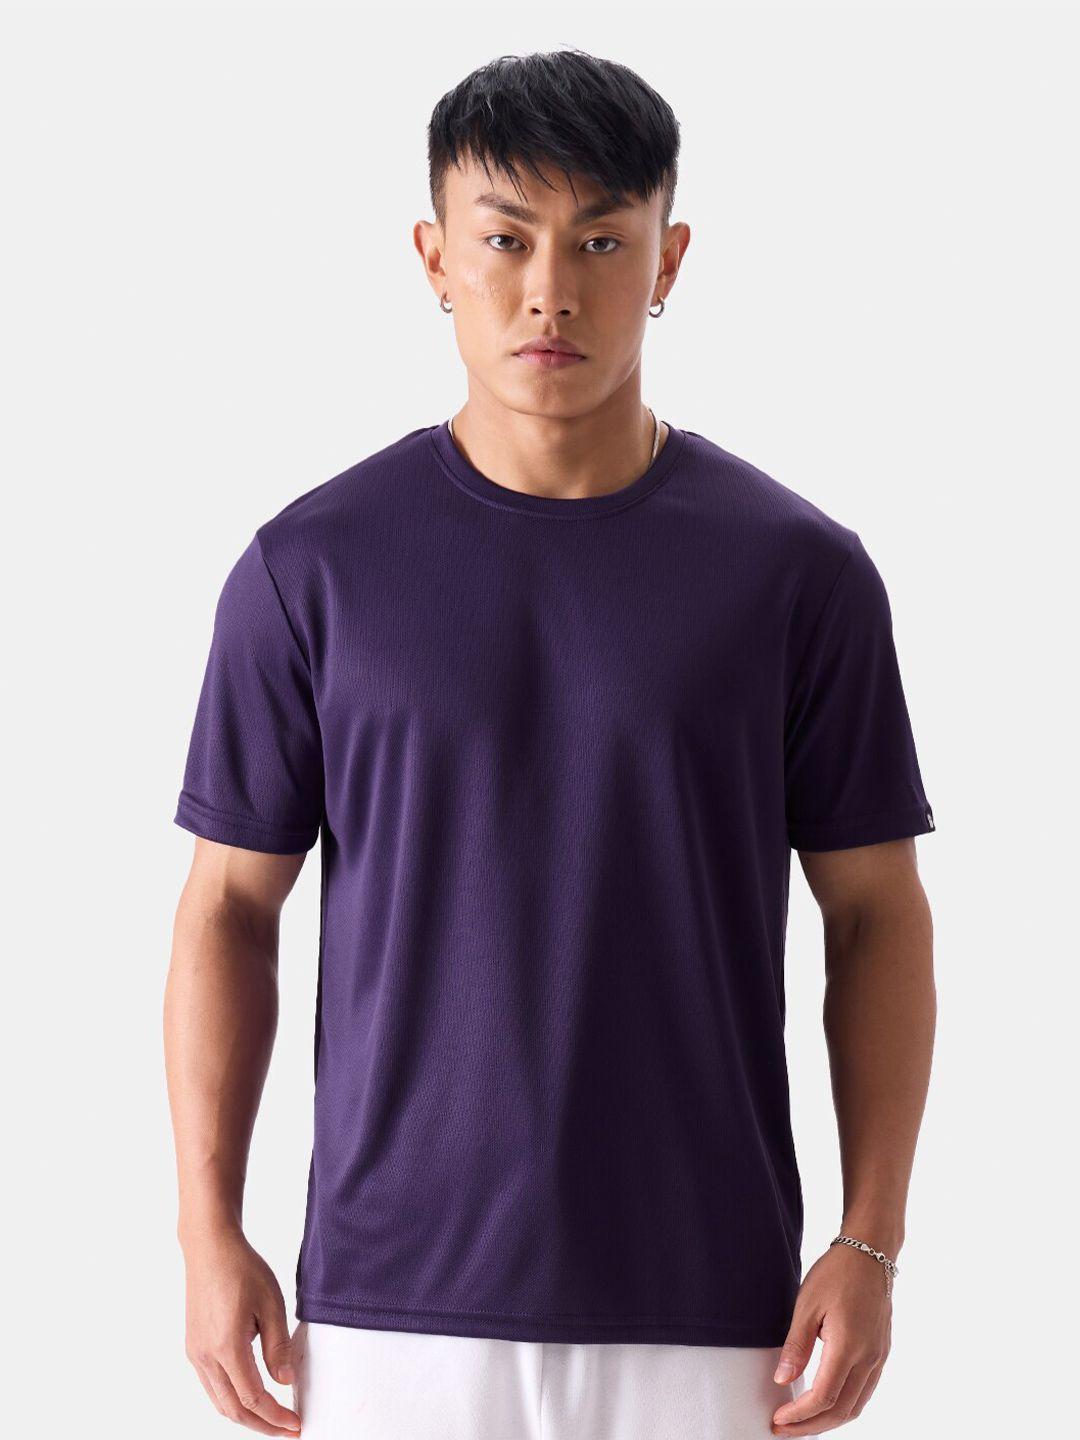 the souled store men purple t-shirt